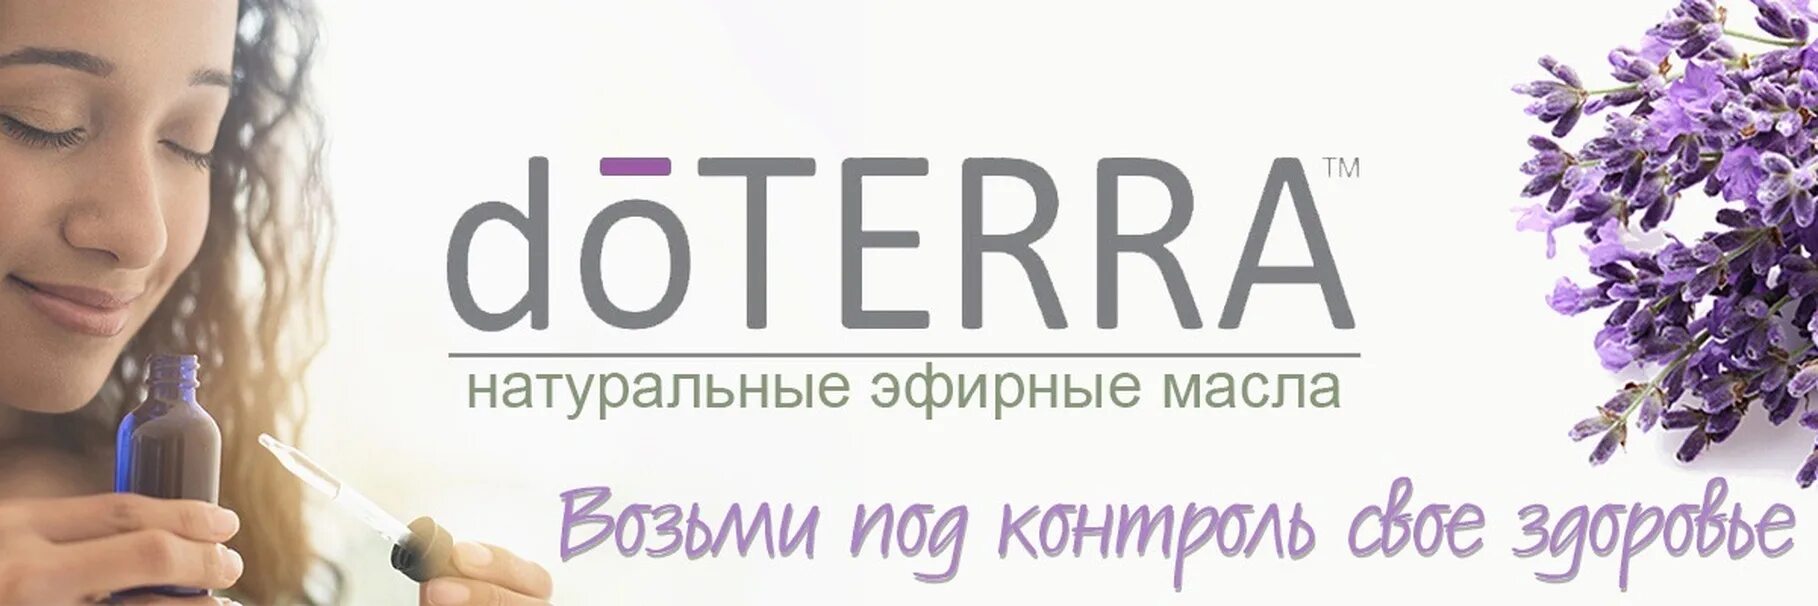 Дотерра россия личный кабинет. DOTERRA логотип. ДОТЕРРА эфирные масла логотип. Эфирные масла DOTERRA для визитки. Надпись ДОТЕРРА.